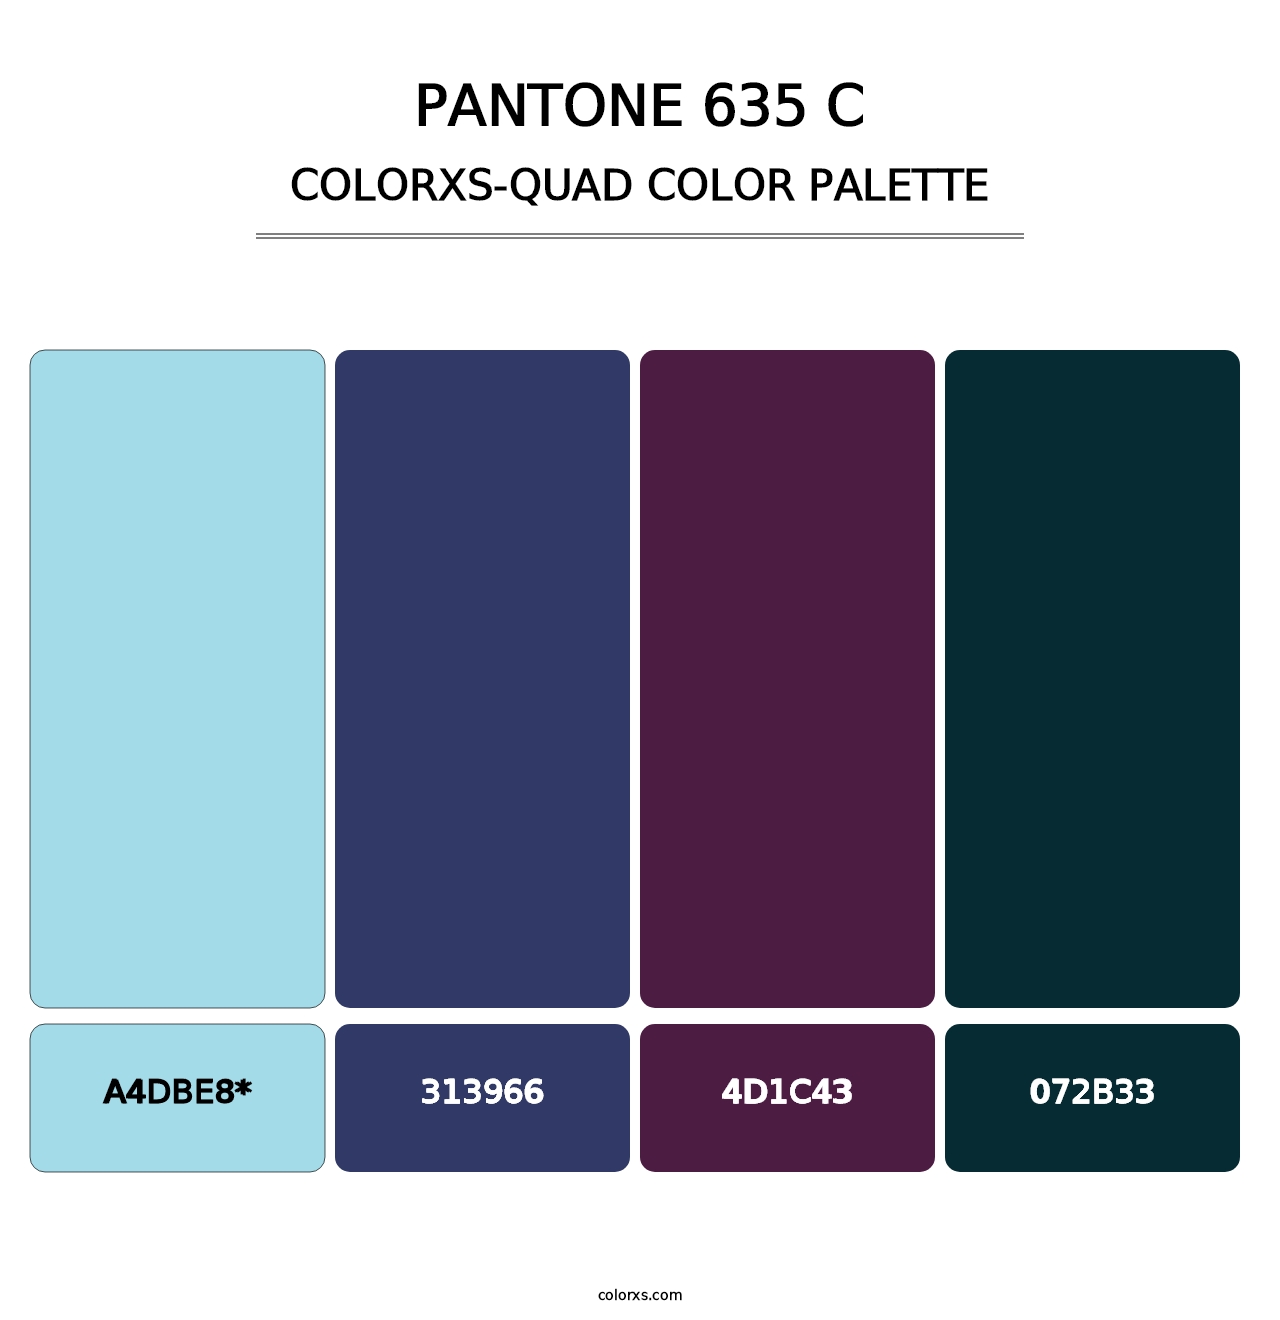 PANTONE 635 C - Colorxs Quad Palette